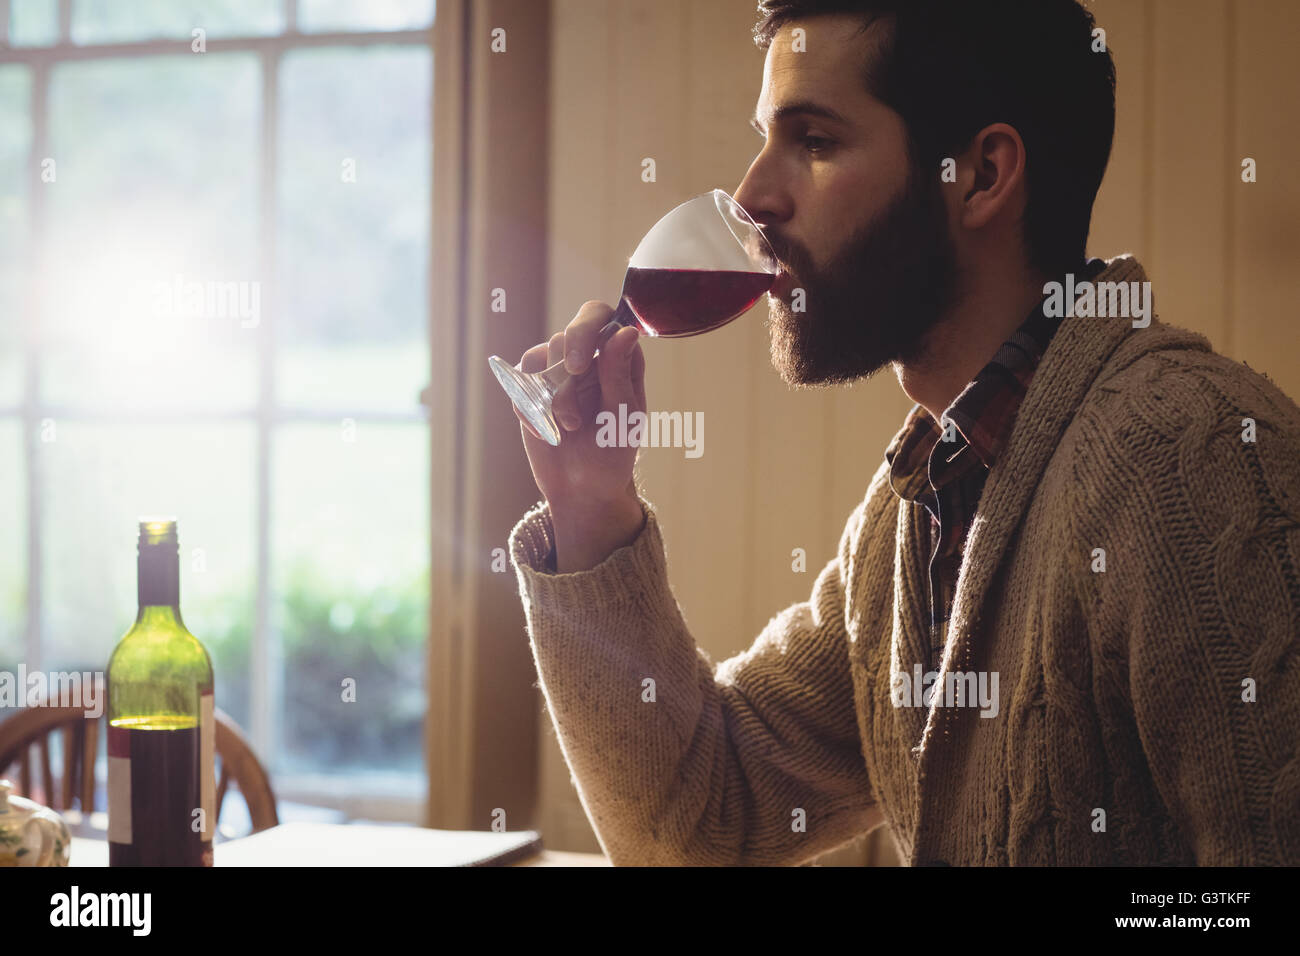 Ver perfil de hipster Hombre bebiendo una copa de vino Foto de stock